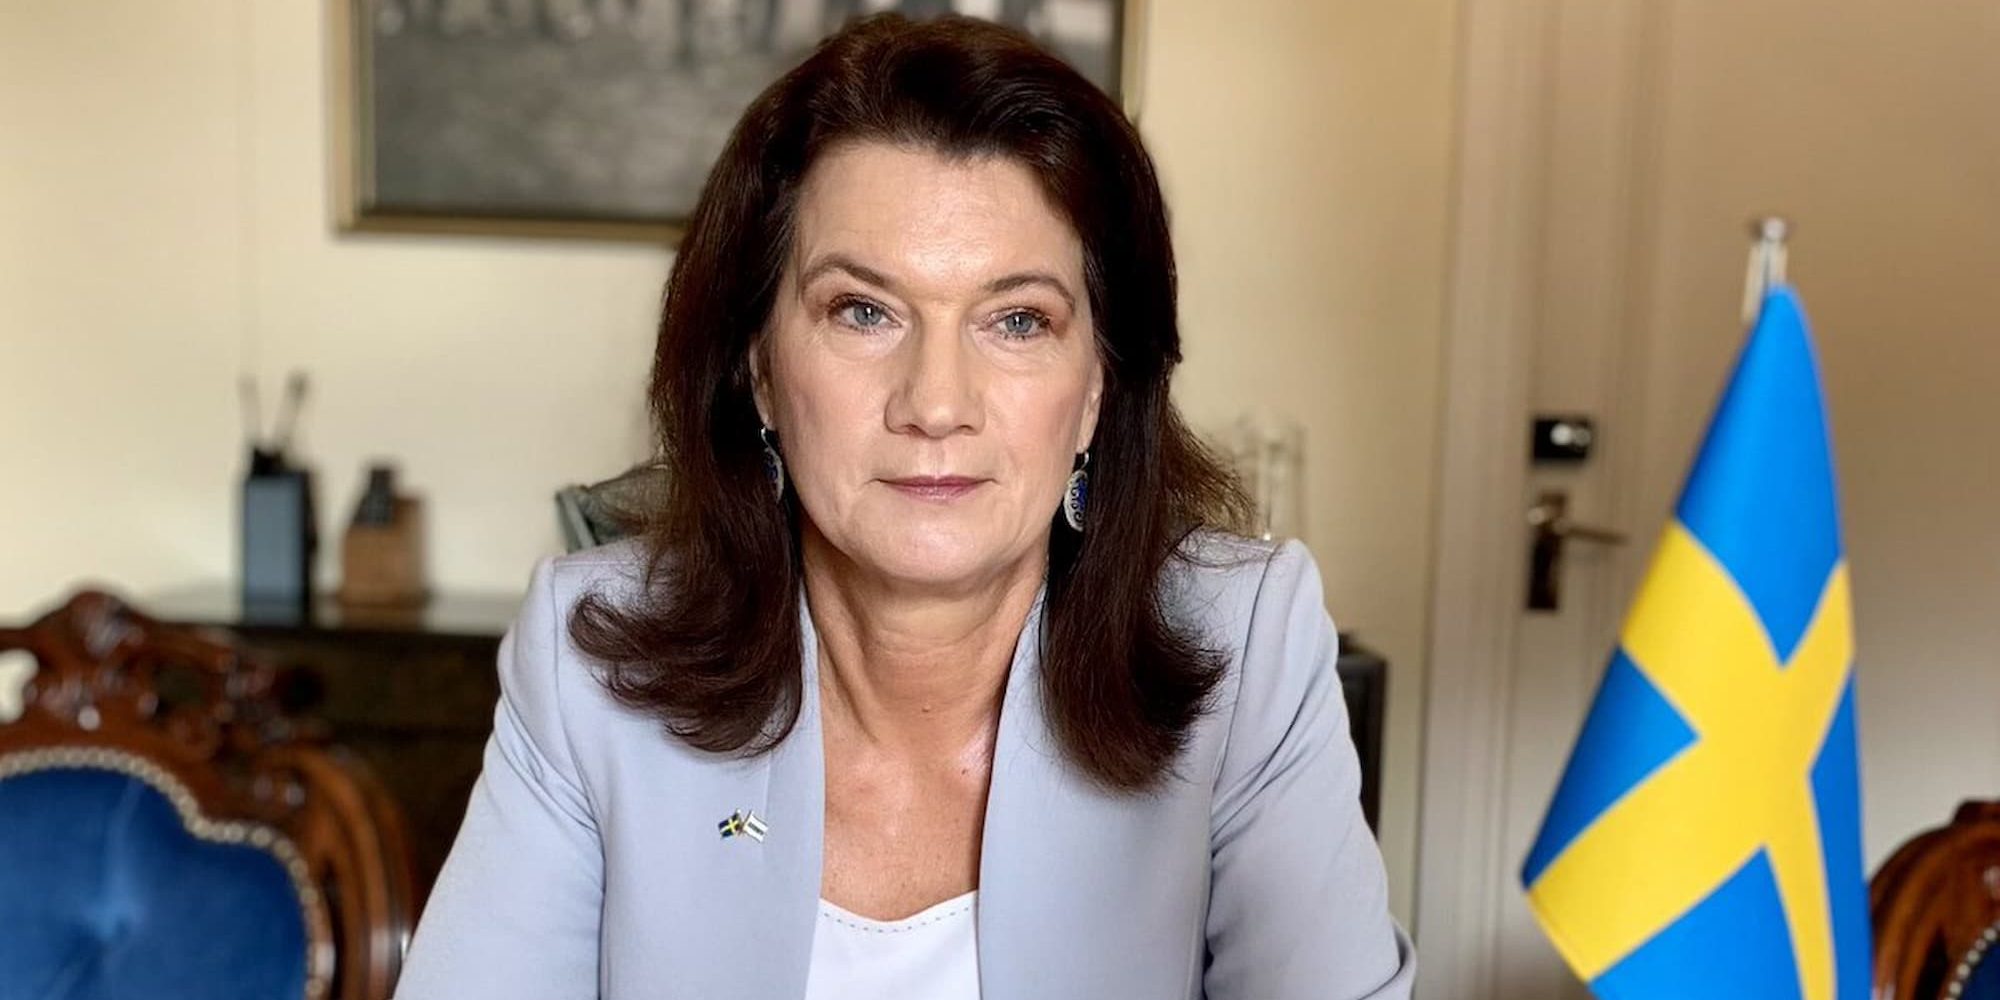 Η Αν Λίντε, υπουργός Εξωτερικών στη Σουηδία